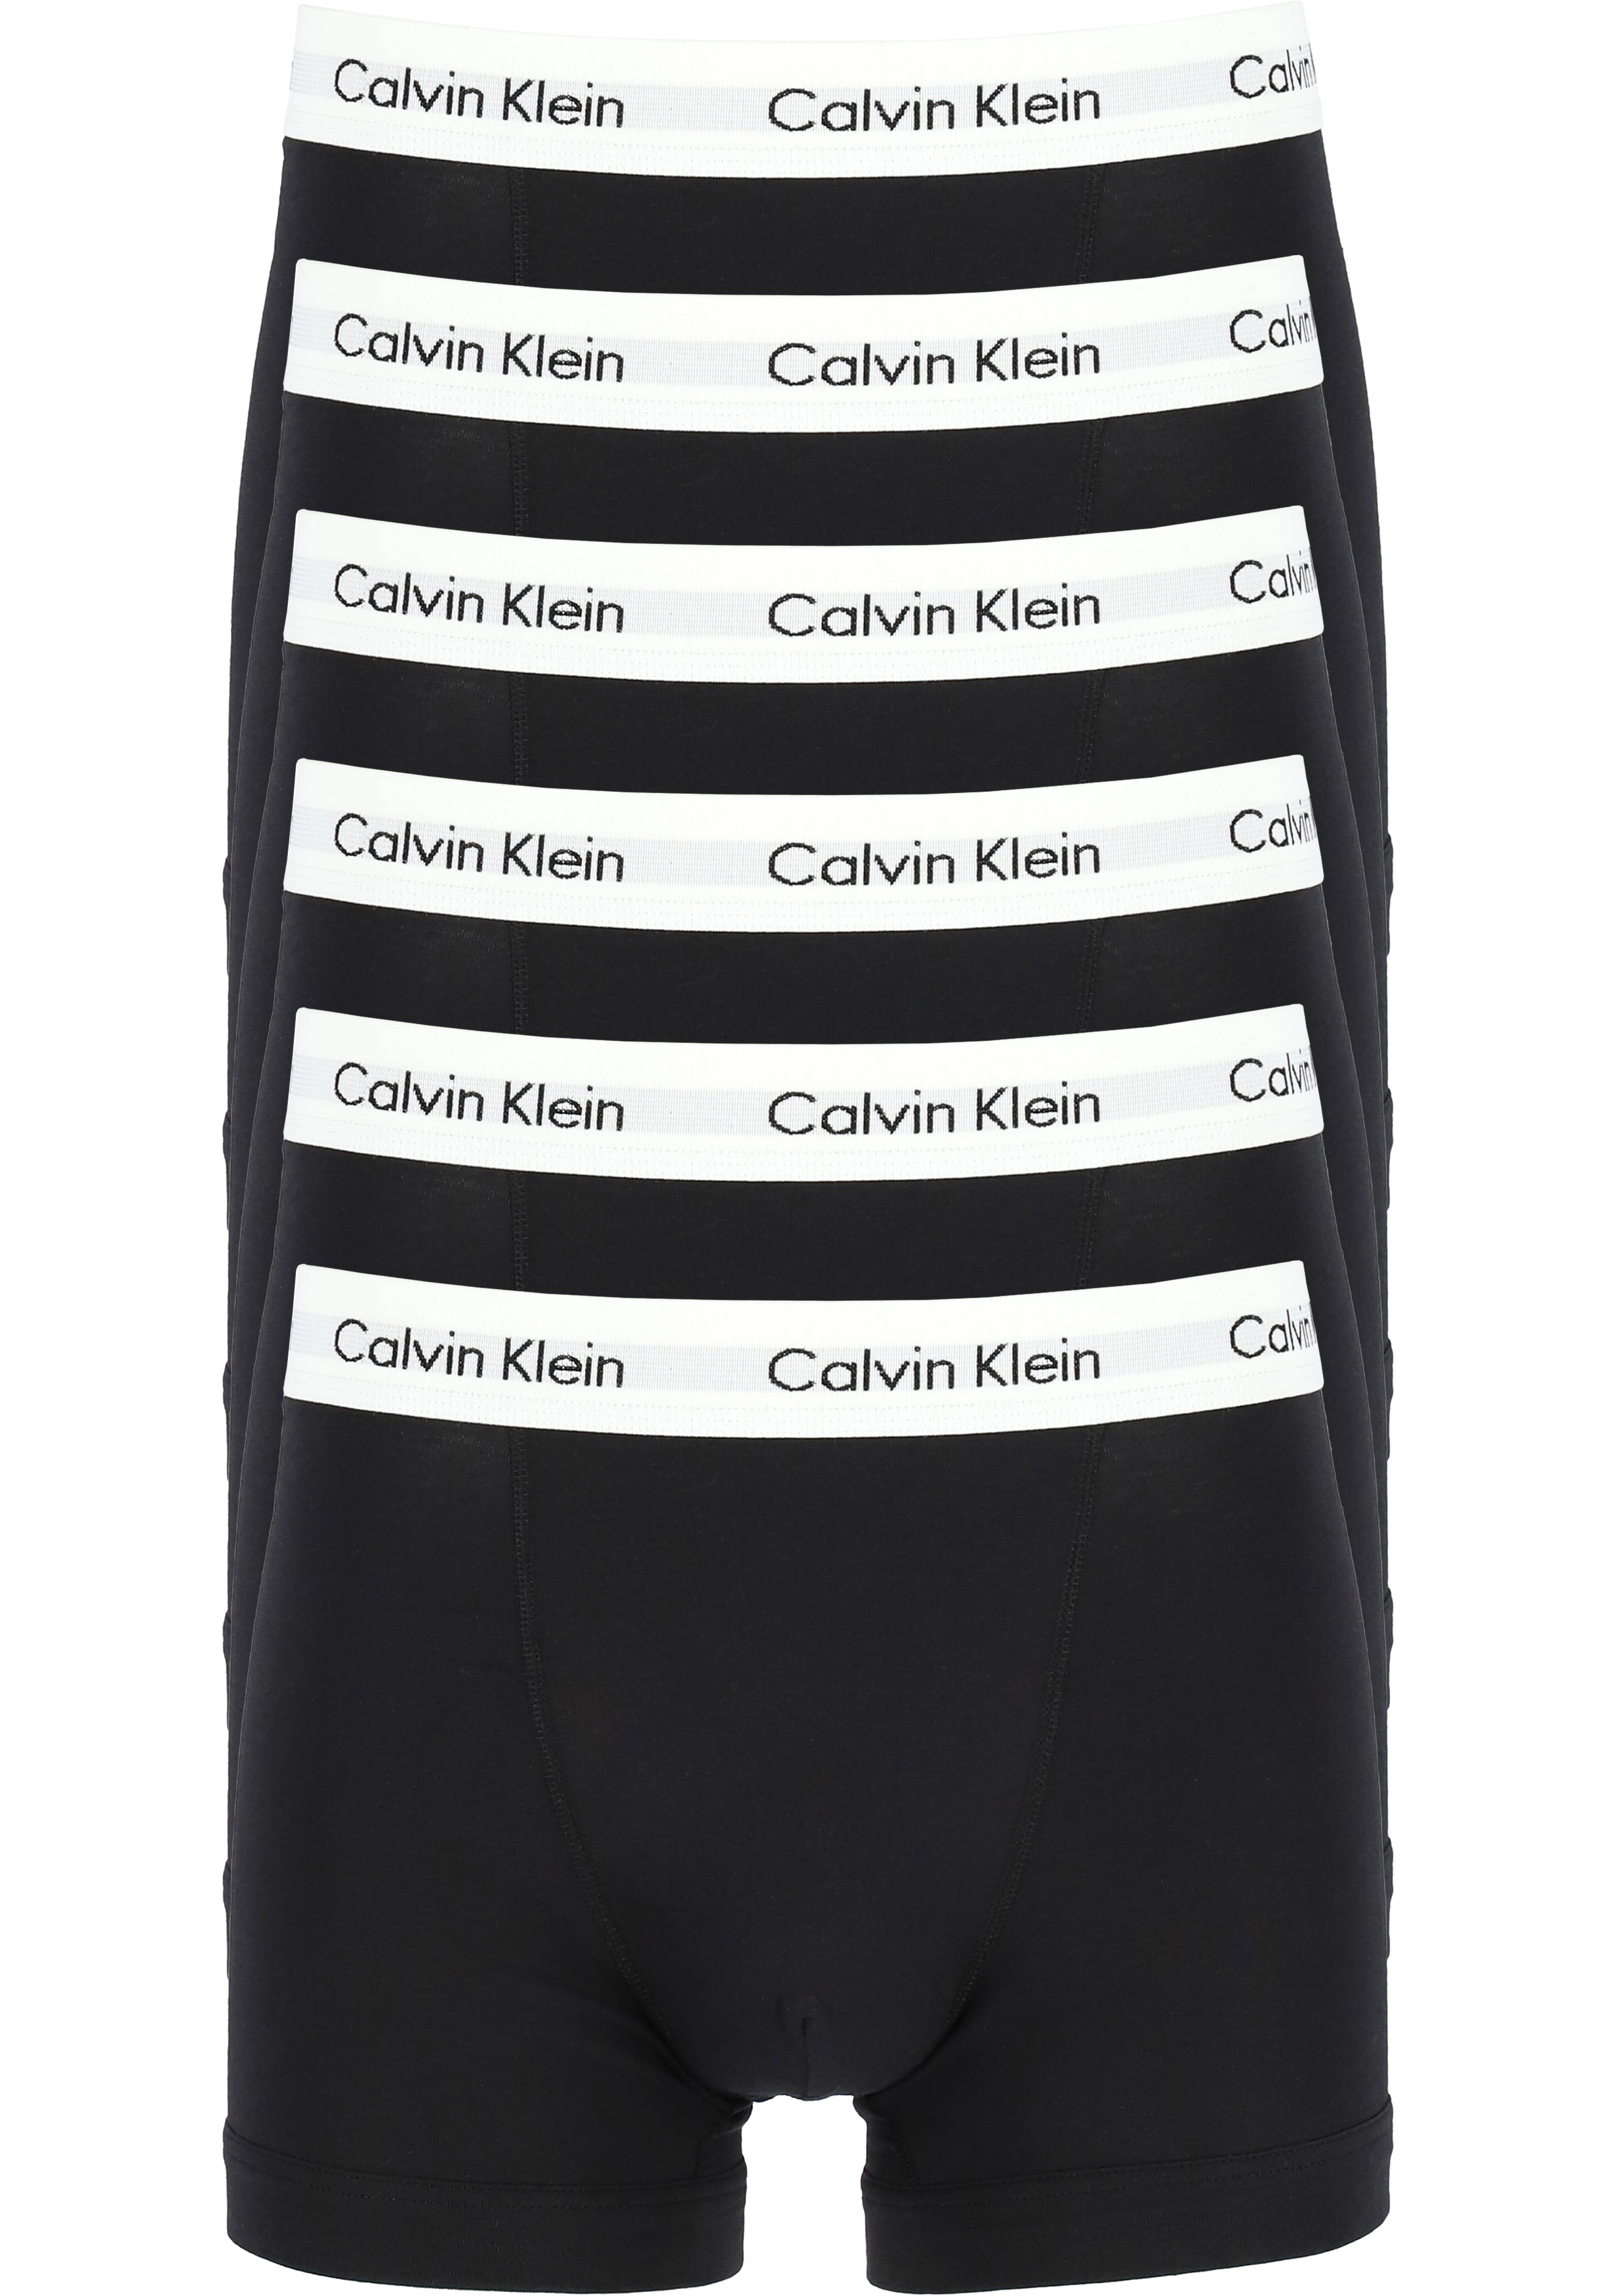 Actie 6-pack: Calvin Klein trunks, heren boxers normale lengte, zwart